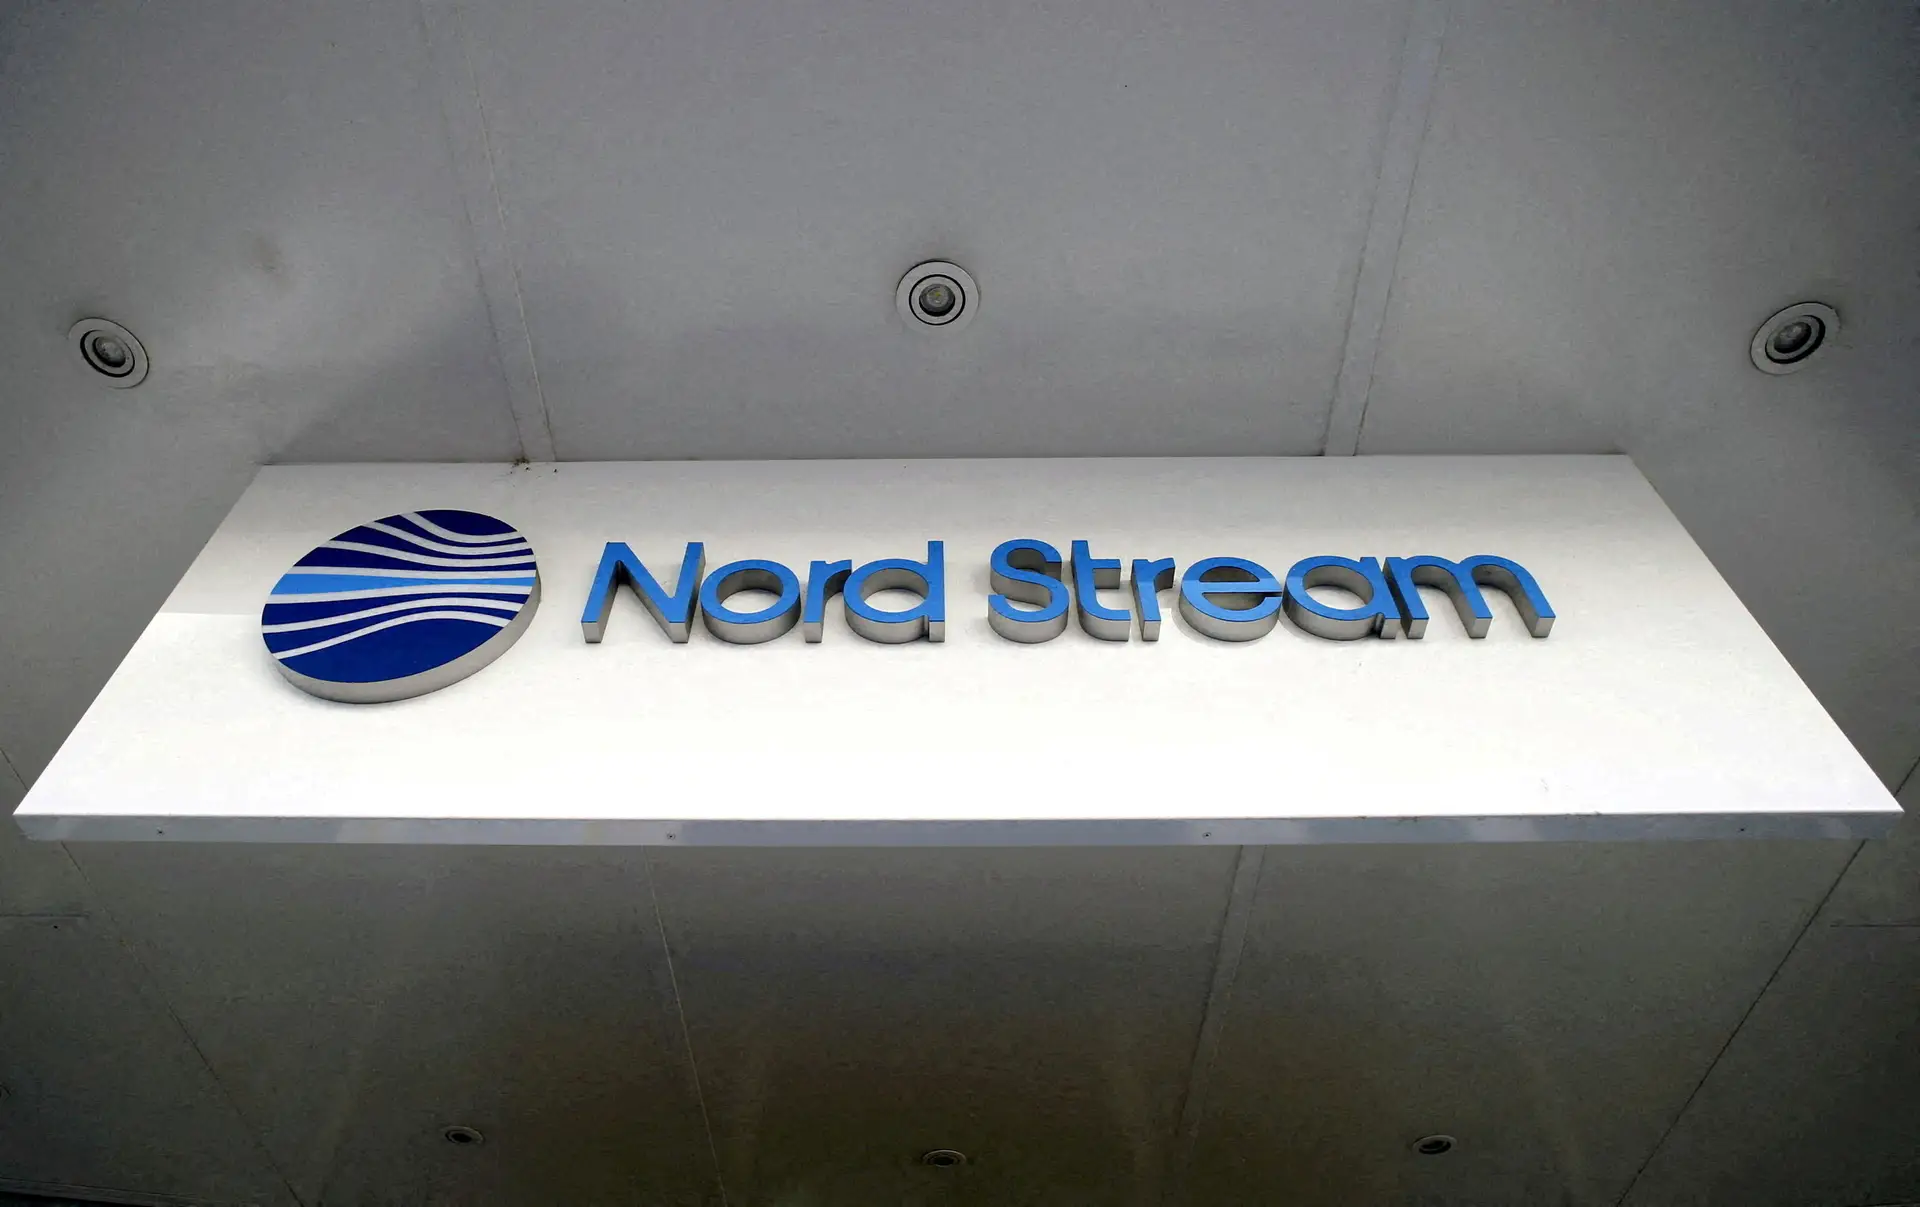 Confirmadas duas crateras de origem não natural nos gasodutos Nord Stream